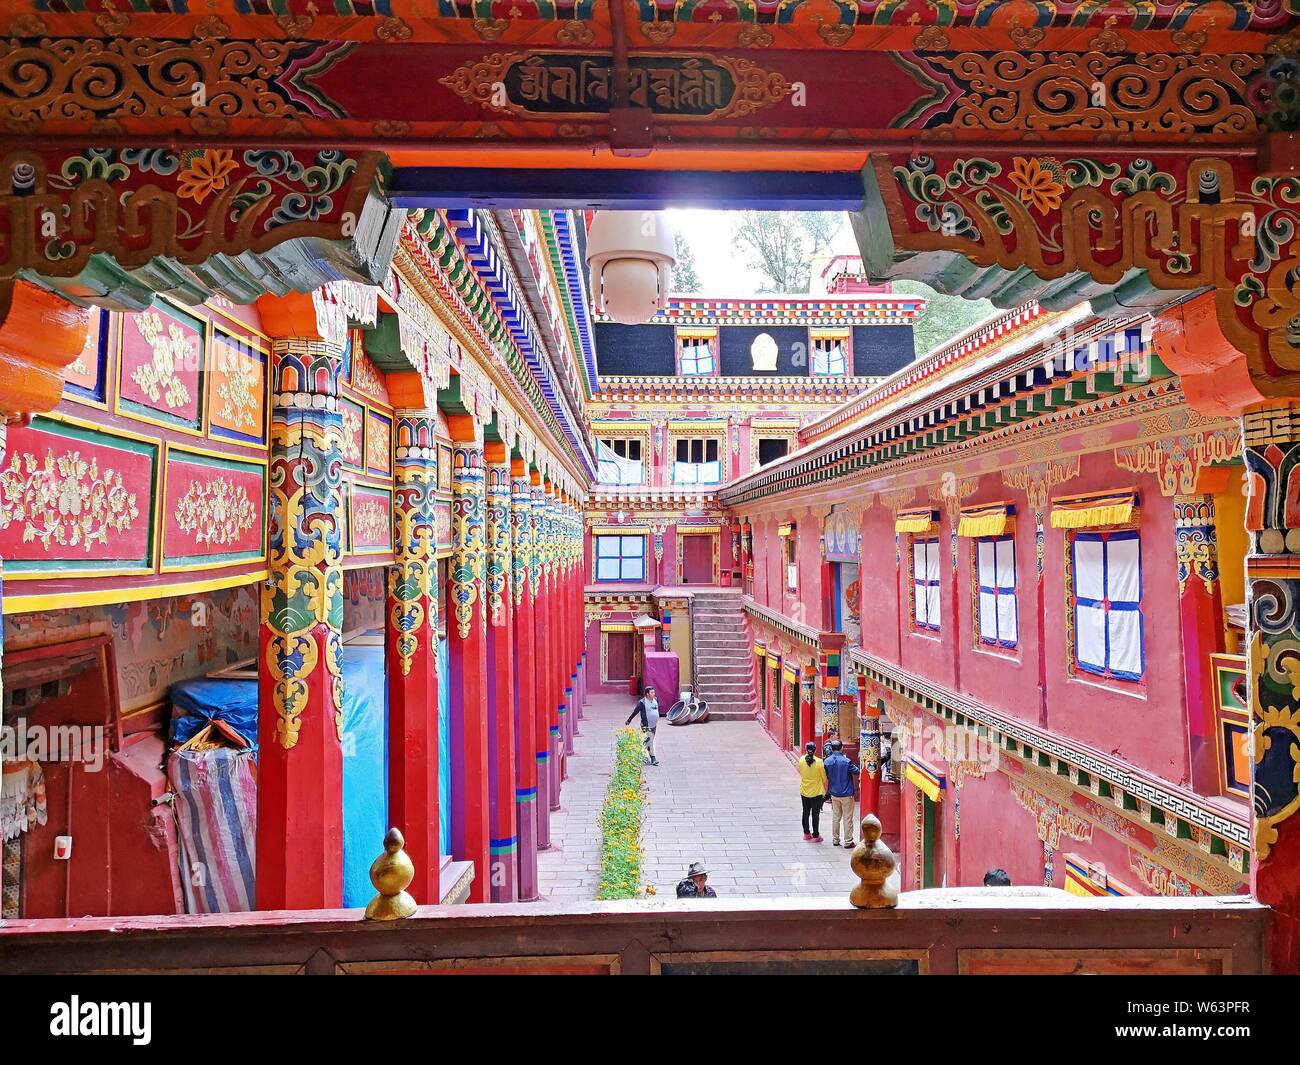 Vue de l'intérieur de la maison Sutra-Printing Dege, ou Dege Parkhang les écritures anciennes maison d'impression à l'intérieur du monastère Gengqing dans le Garze un Tibétain Banque D'Images